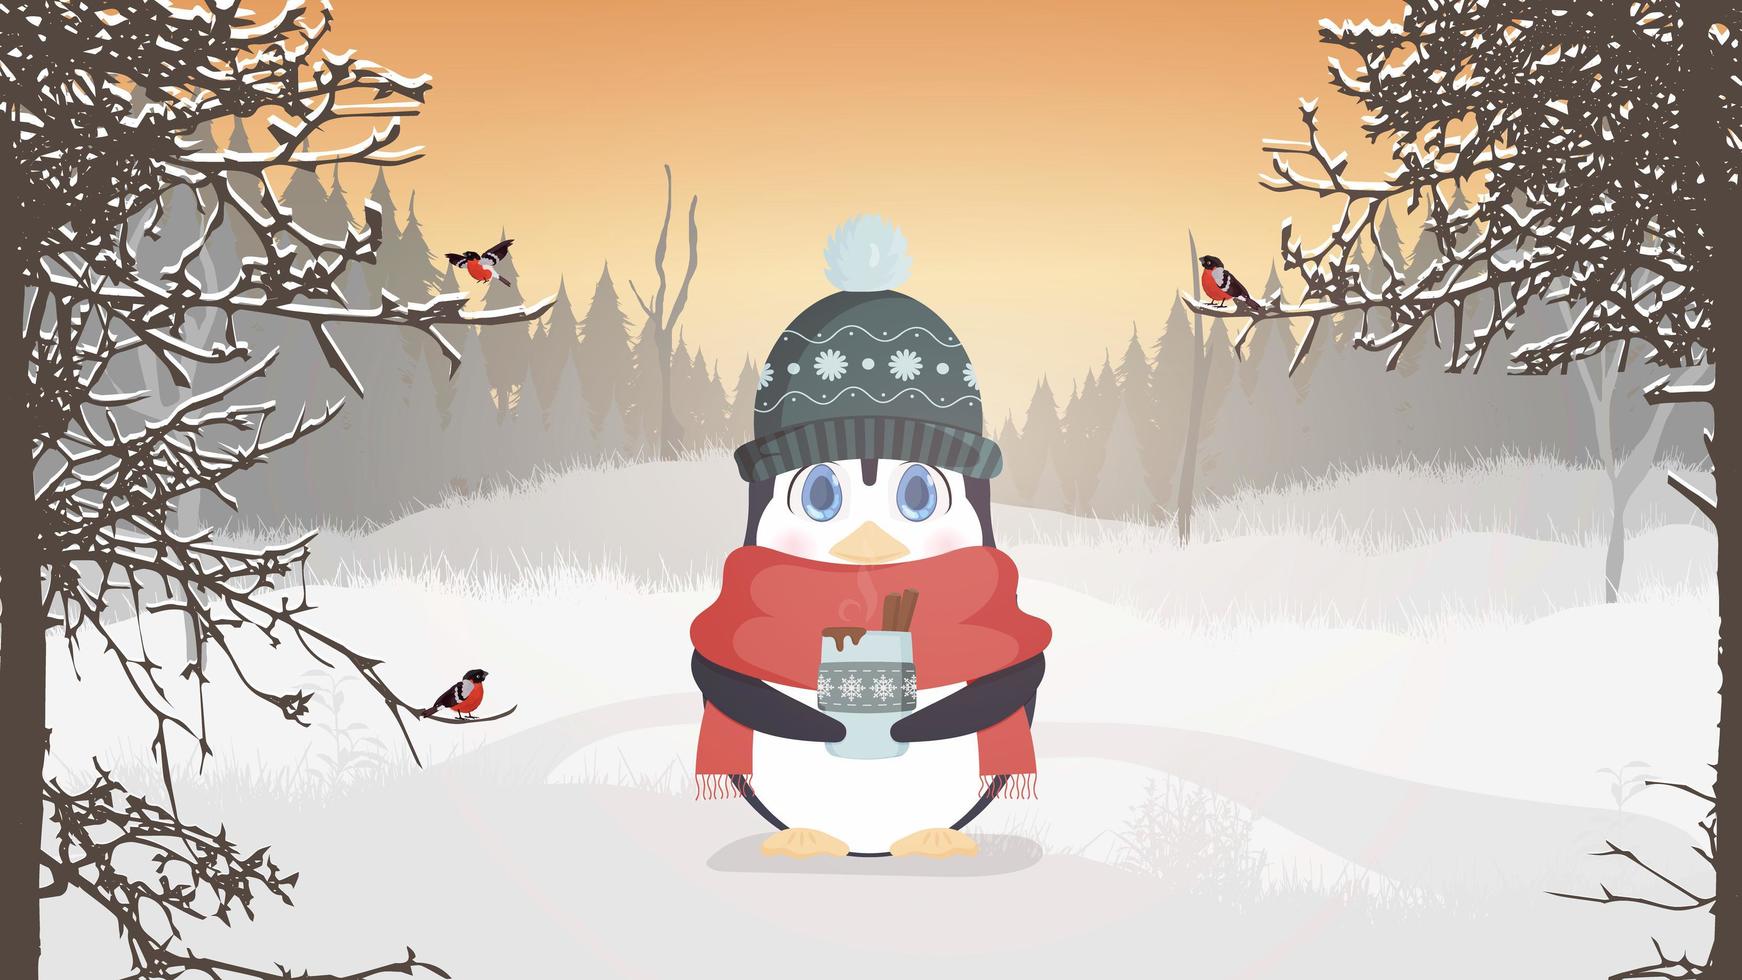 un pingouin en vêtements chauds d'hiver tient une tasse dans ses mains. un pingouin mignon dans une forêt enneigée boit une boisson chaude. carte postale toute faite pour un thème d'hiver. illustration vectorielle. vecteur